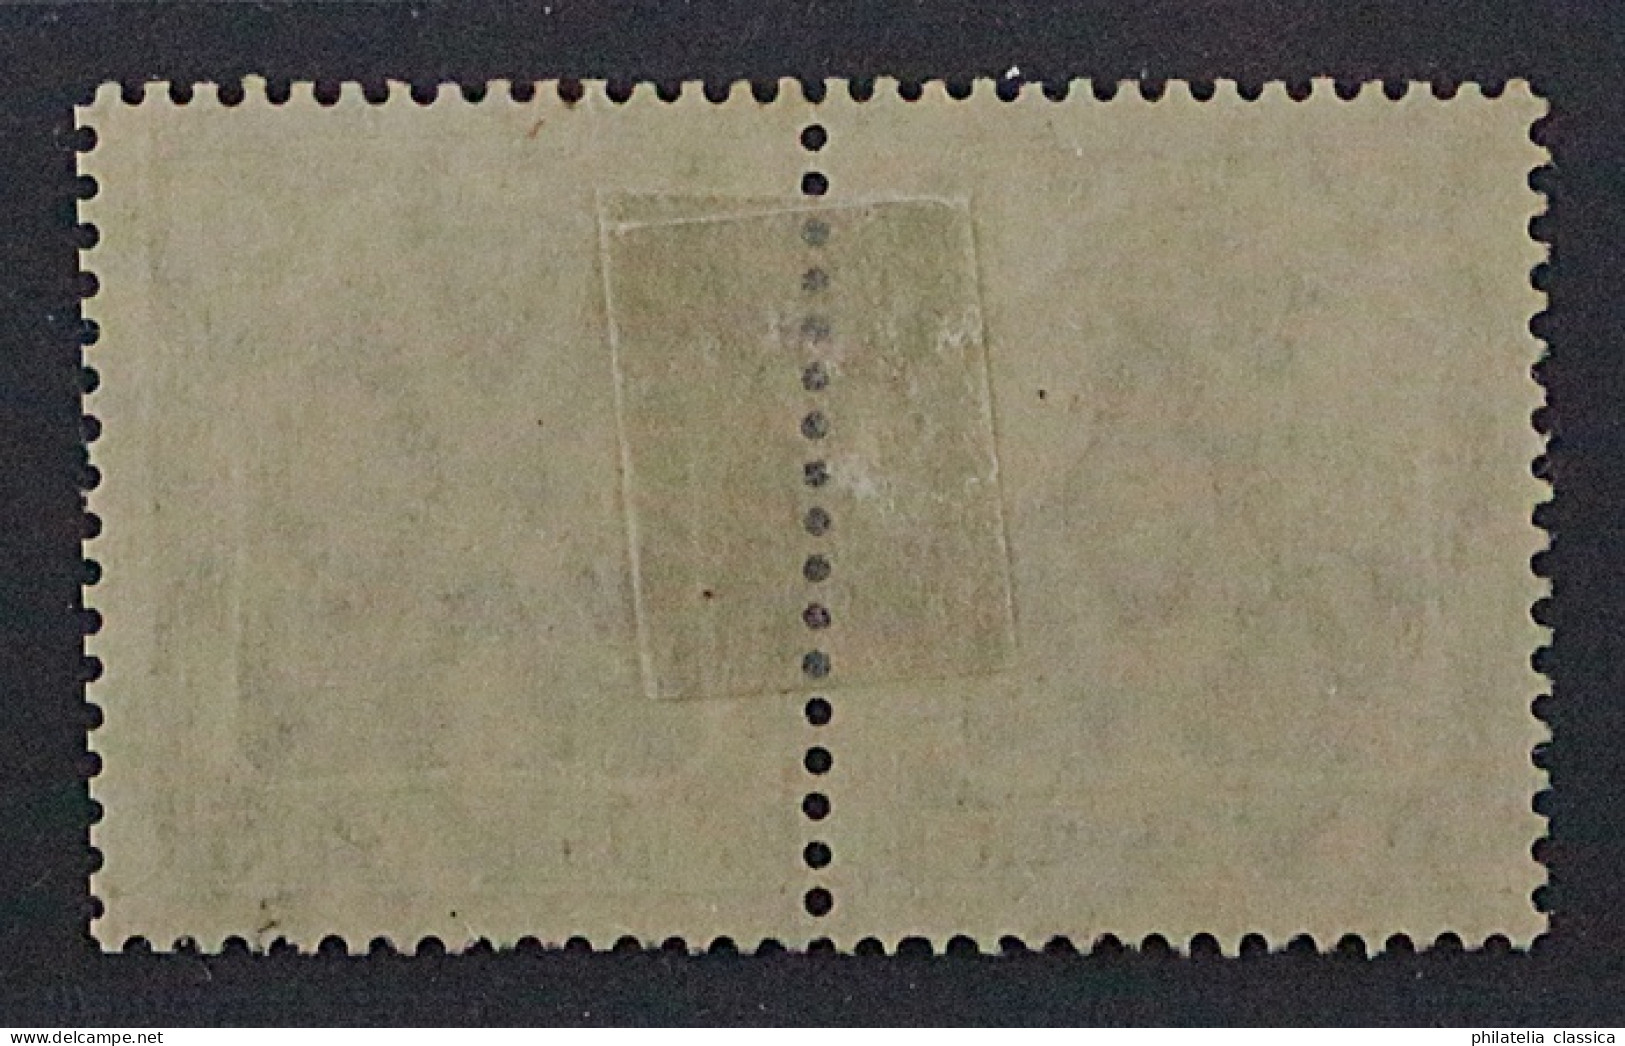 1917, Dt.Reich Zusammendruck W 9 Aa ** Germania 15 + 5 Pfg. Mit Falz, KW 200,-€ - Booklets & Se-tenant